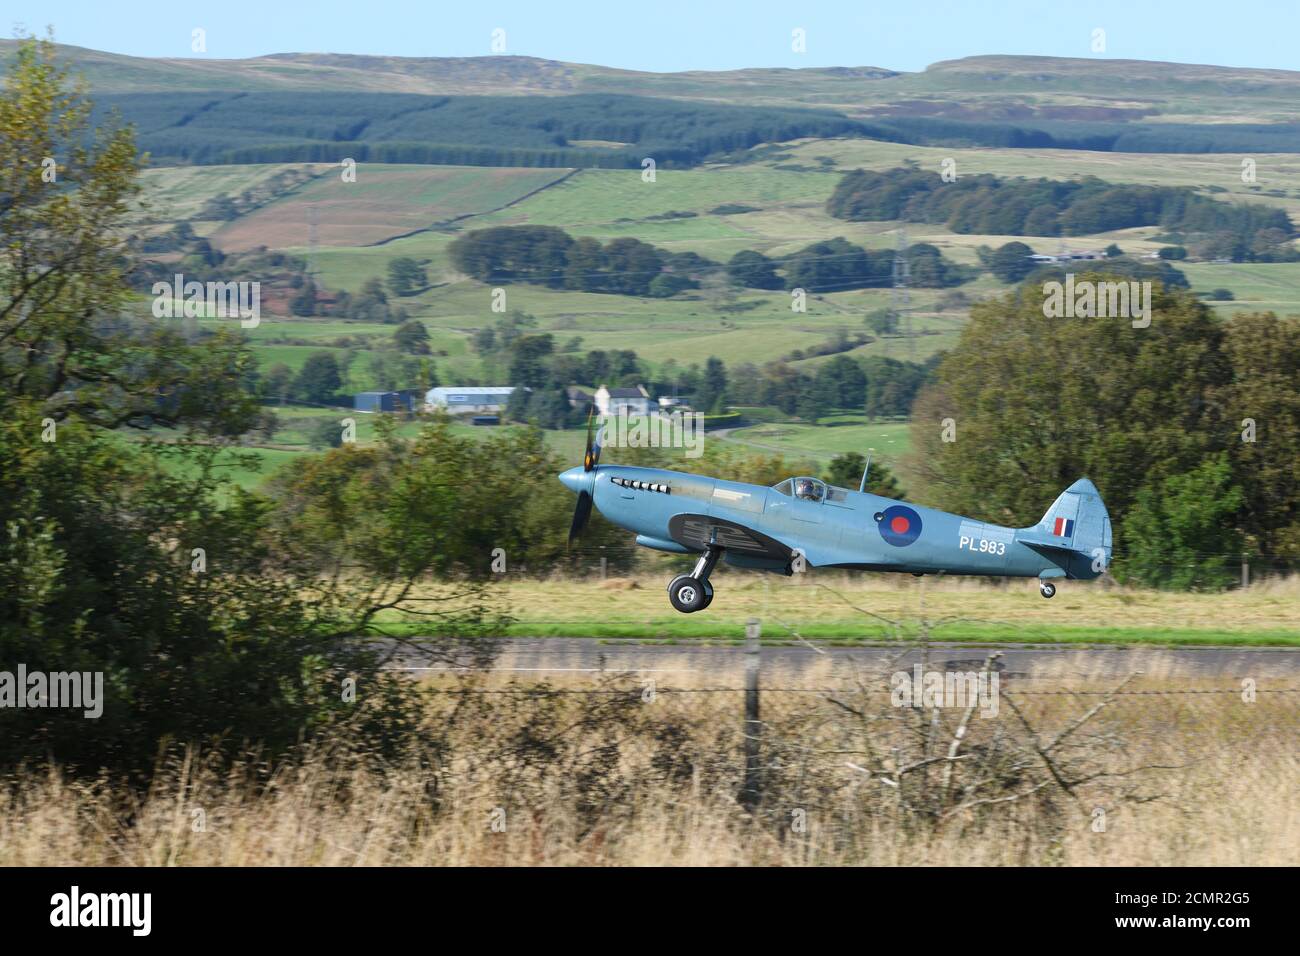 17 septembre 2020. Un Spitfire de la Seconde Guerre mondiale part de l'aéroport de Cumbernauld, après avoir visité l'Écosse, au Royaume-Uni. Banque D'Images